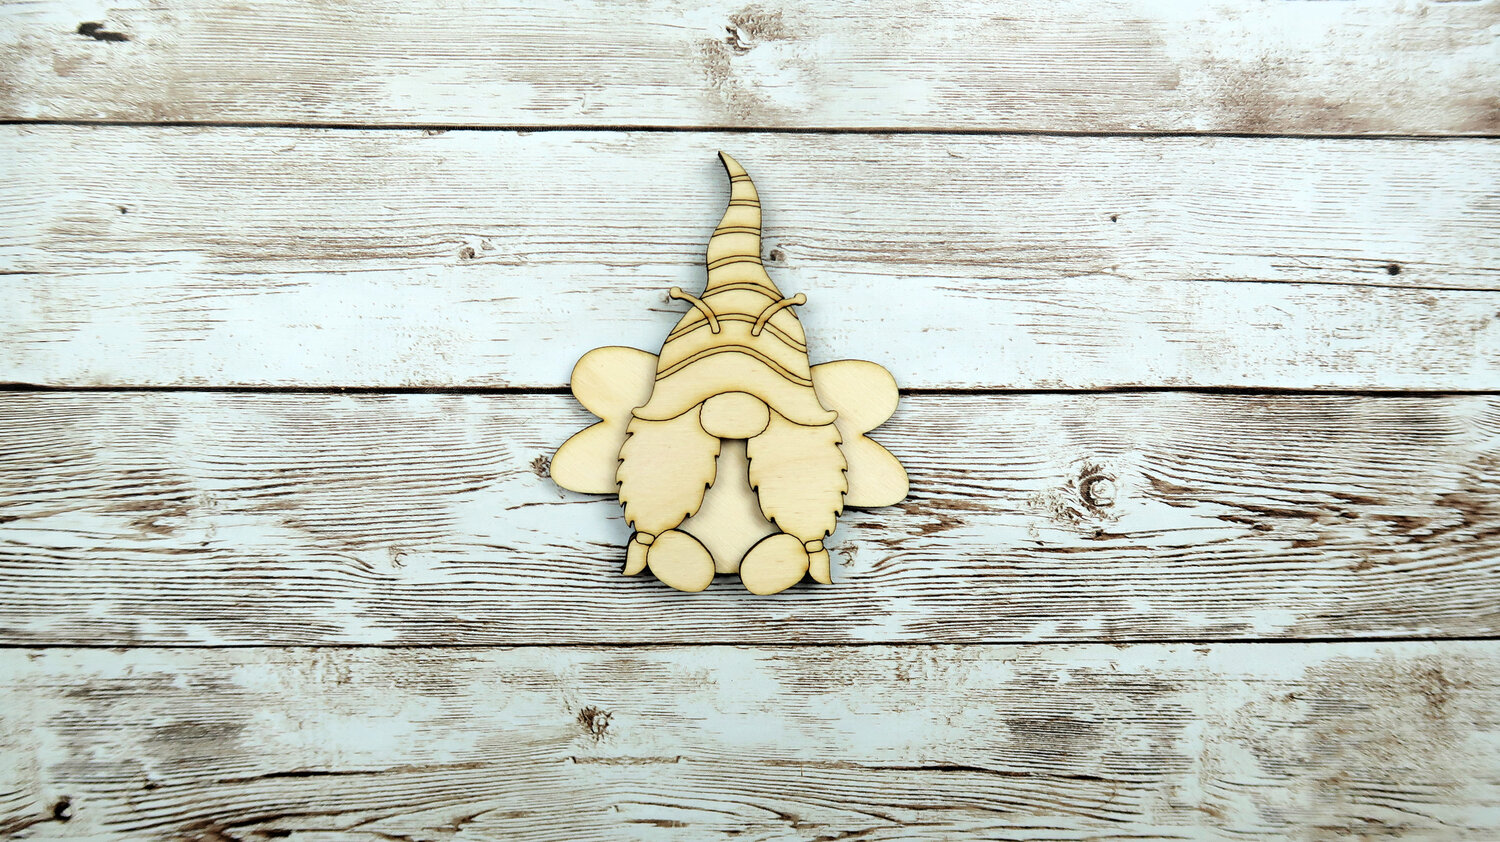 Bumble Bee Gnomes DIY Wood Decor Carft Kit - Paisleys and Polka Dots